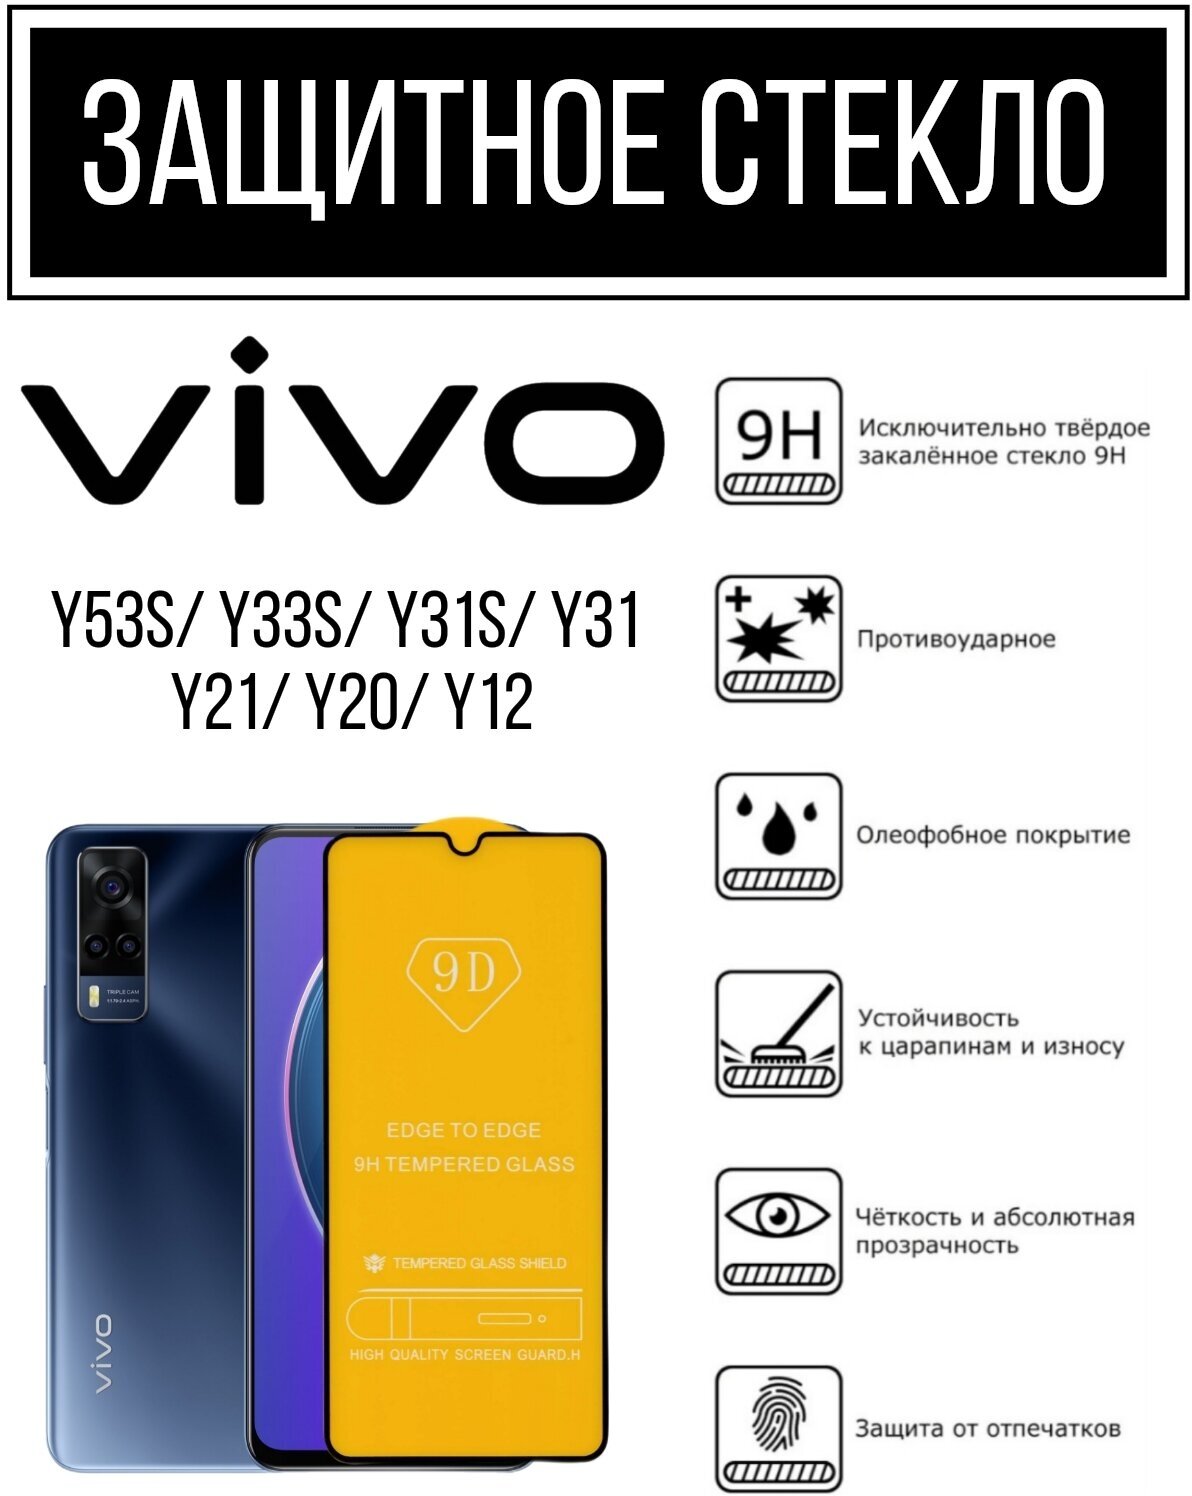 Противоударное закалённое защитное стекло для смартфонов Vivo Y53s/ Y33s/ Y31s/ Y31/ Y21/ Y20/ Y12